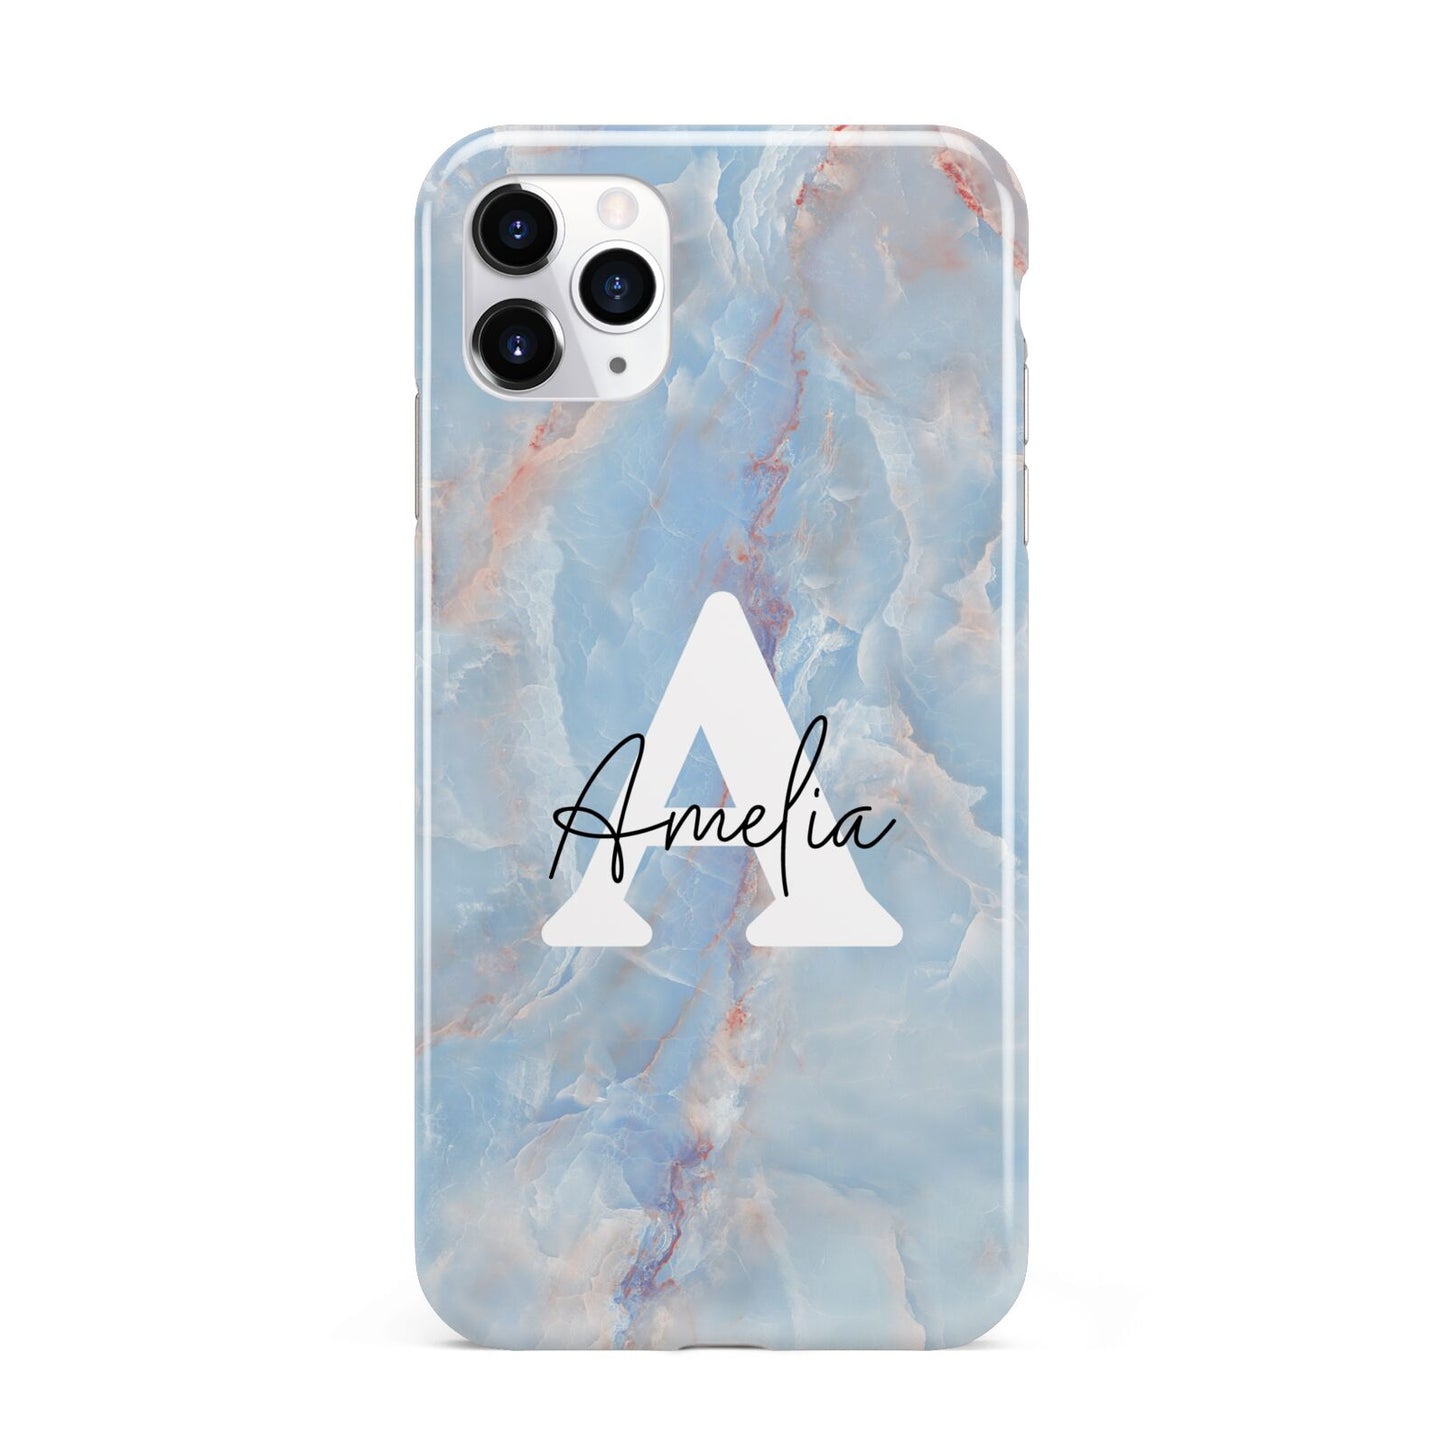 Blue Onyx Marble iPhone 11 Pro Max 3D Tough Case